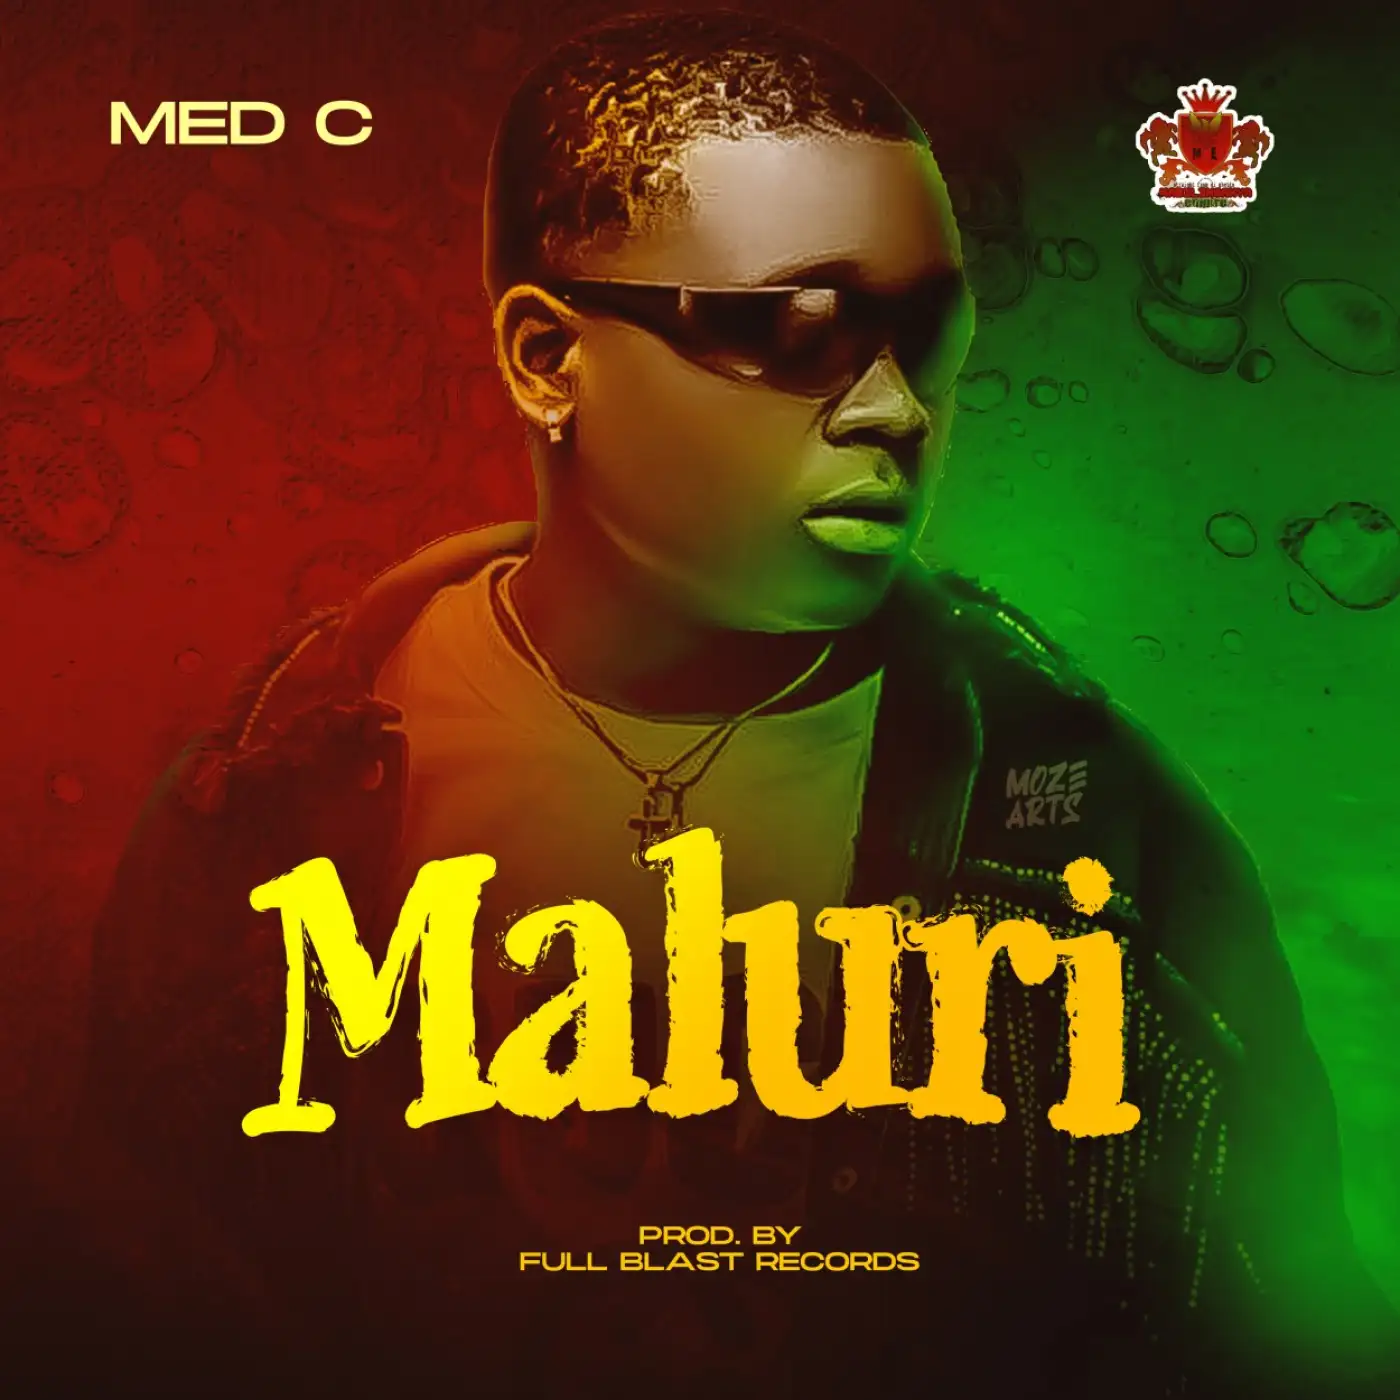 Med C-Med C - Maluri (Prod. Full Blast Records)-song artwork cover